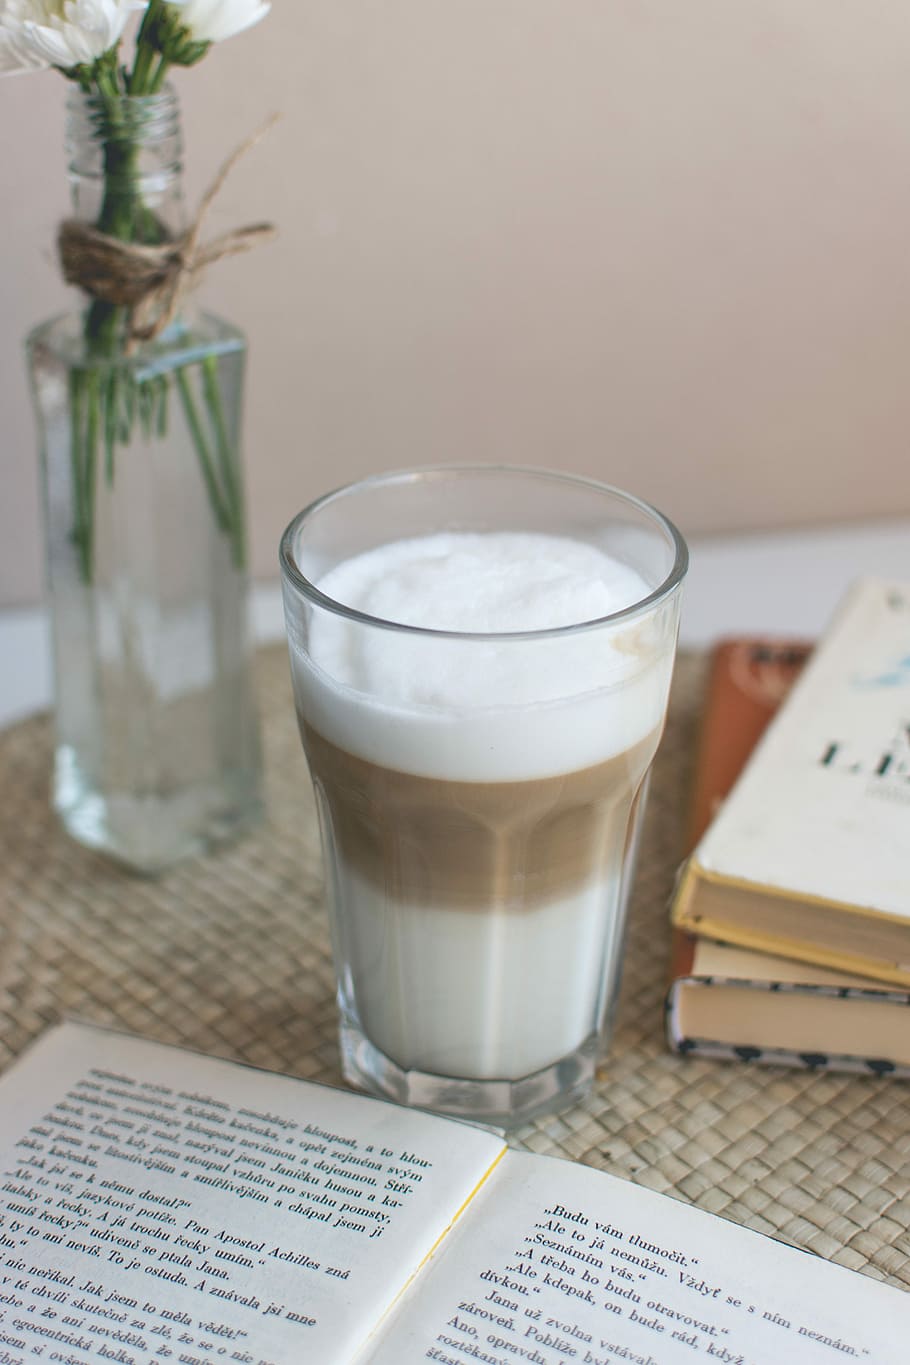 Caffe latté at home, caffe latte, drink, book, newspaper, document, HD wallpaper